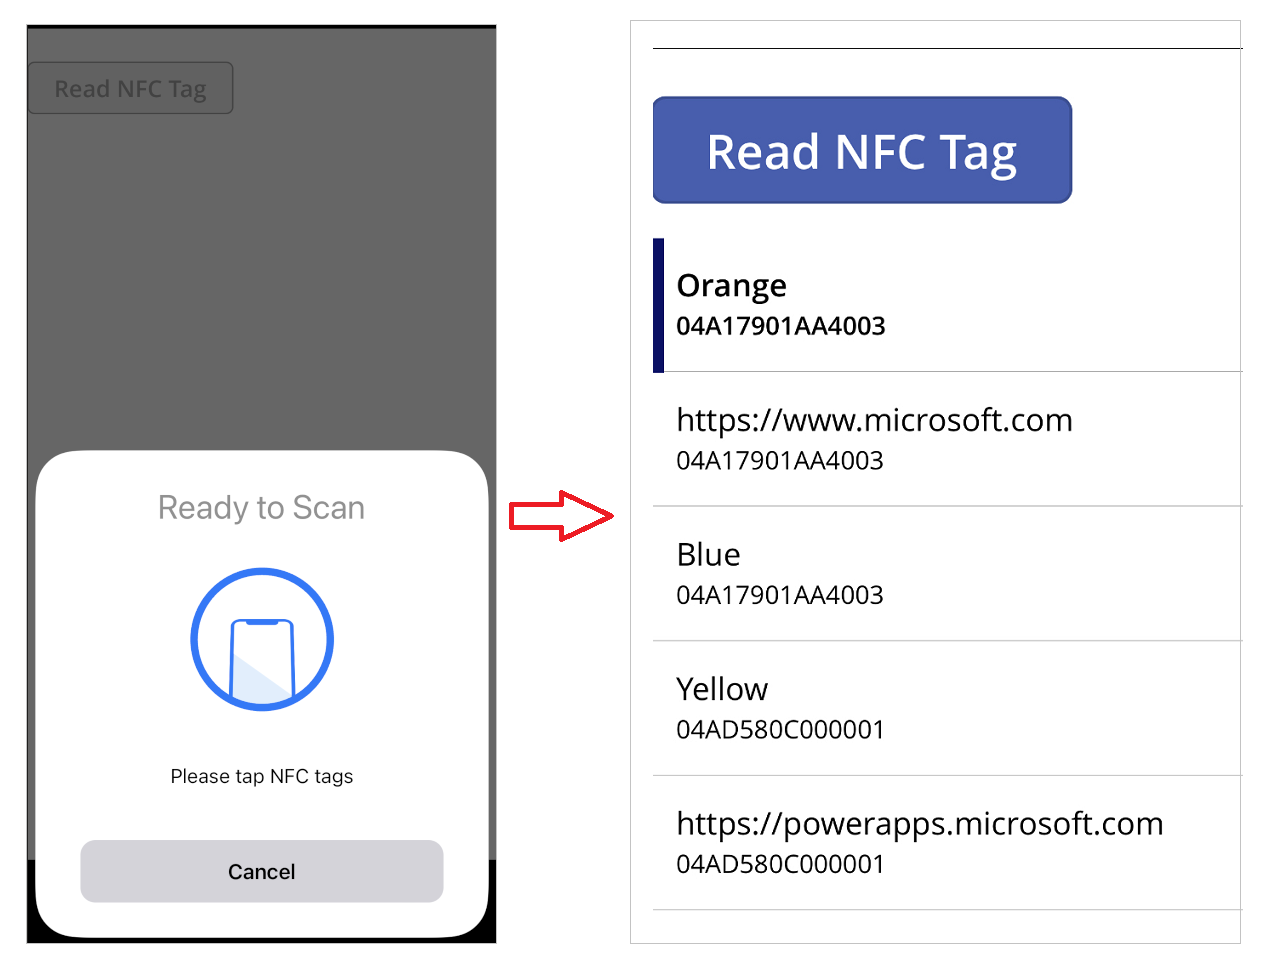 NFC タグの読み取り例とギャラリー内の結果を含むモバイル デバイスのアプリ。